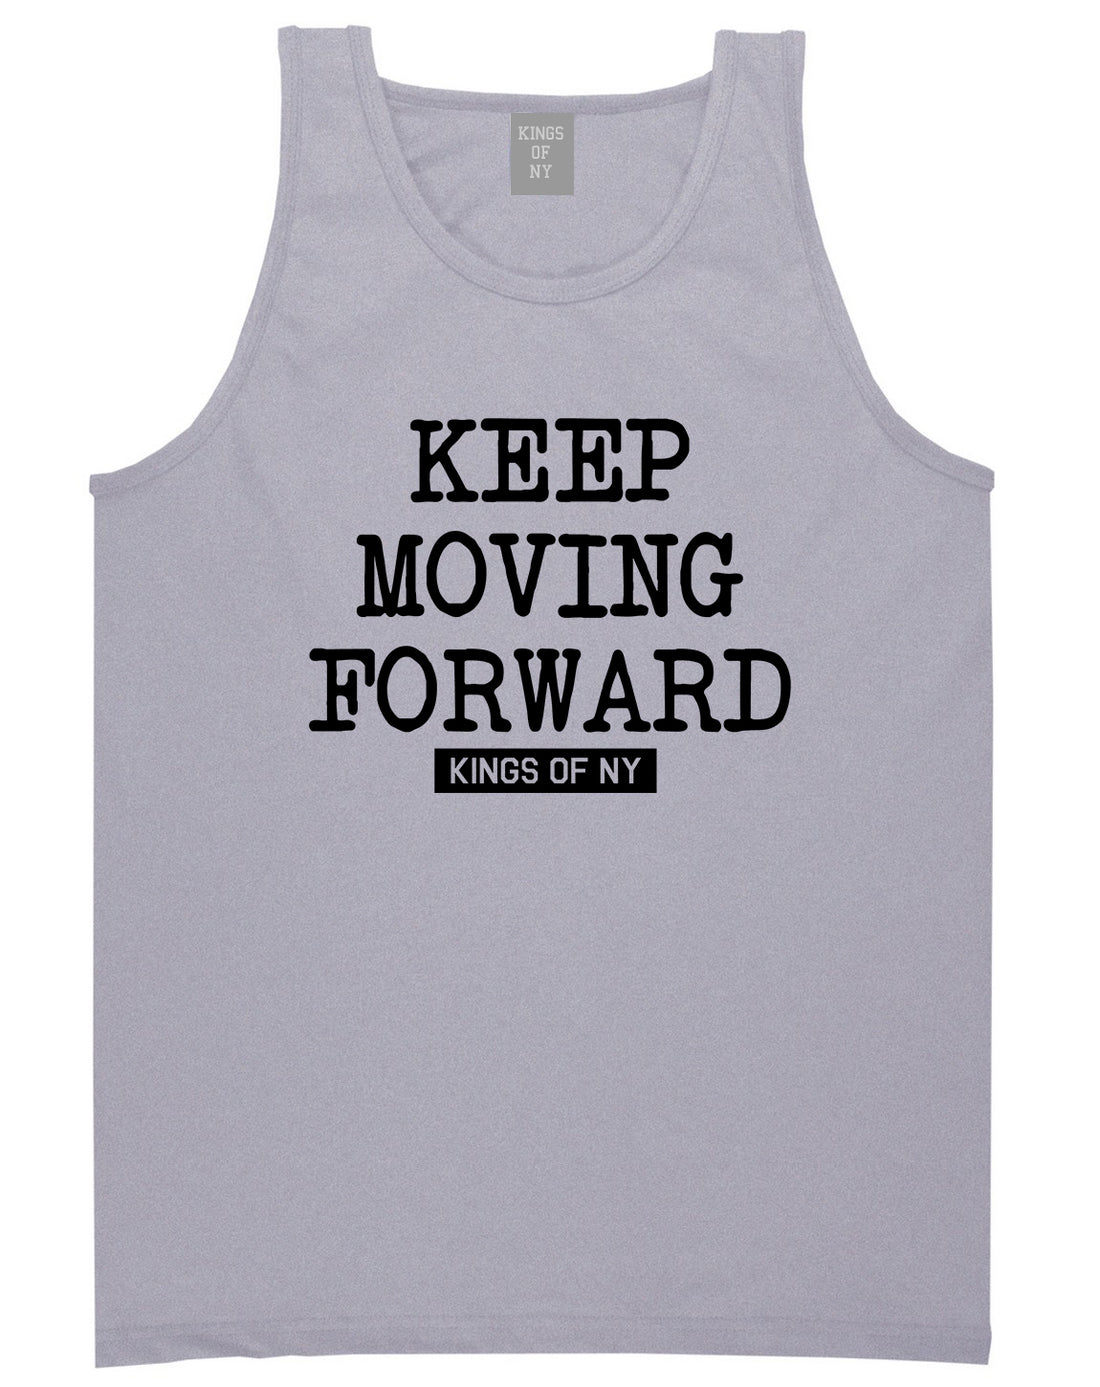 Keep Moving Forward Mens Tank Top Shirt Grey